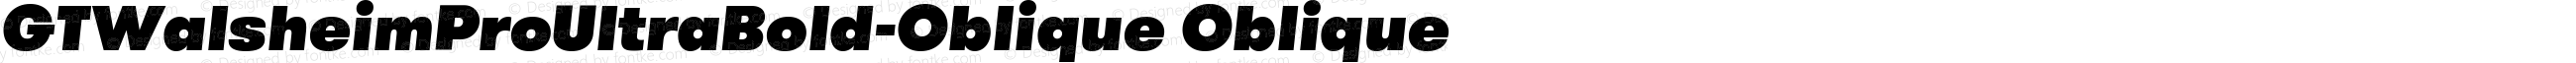 GTWalsheimProUltraBold-Oblique Oblique